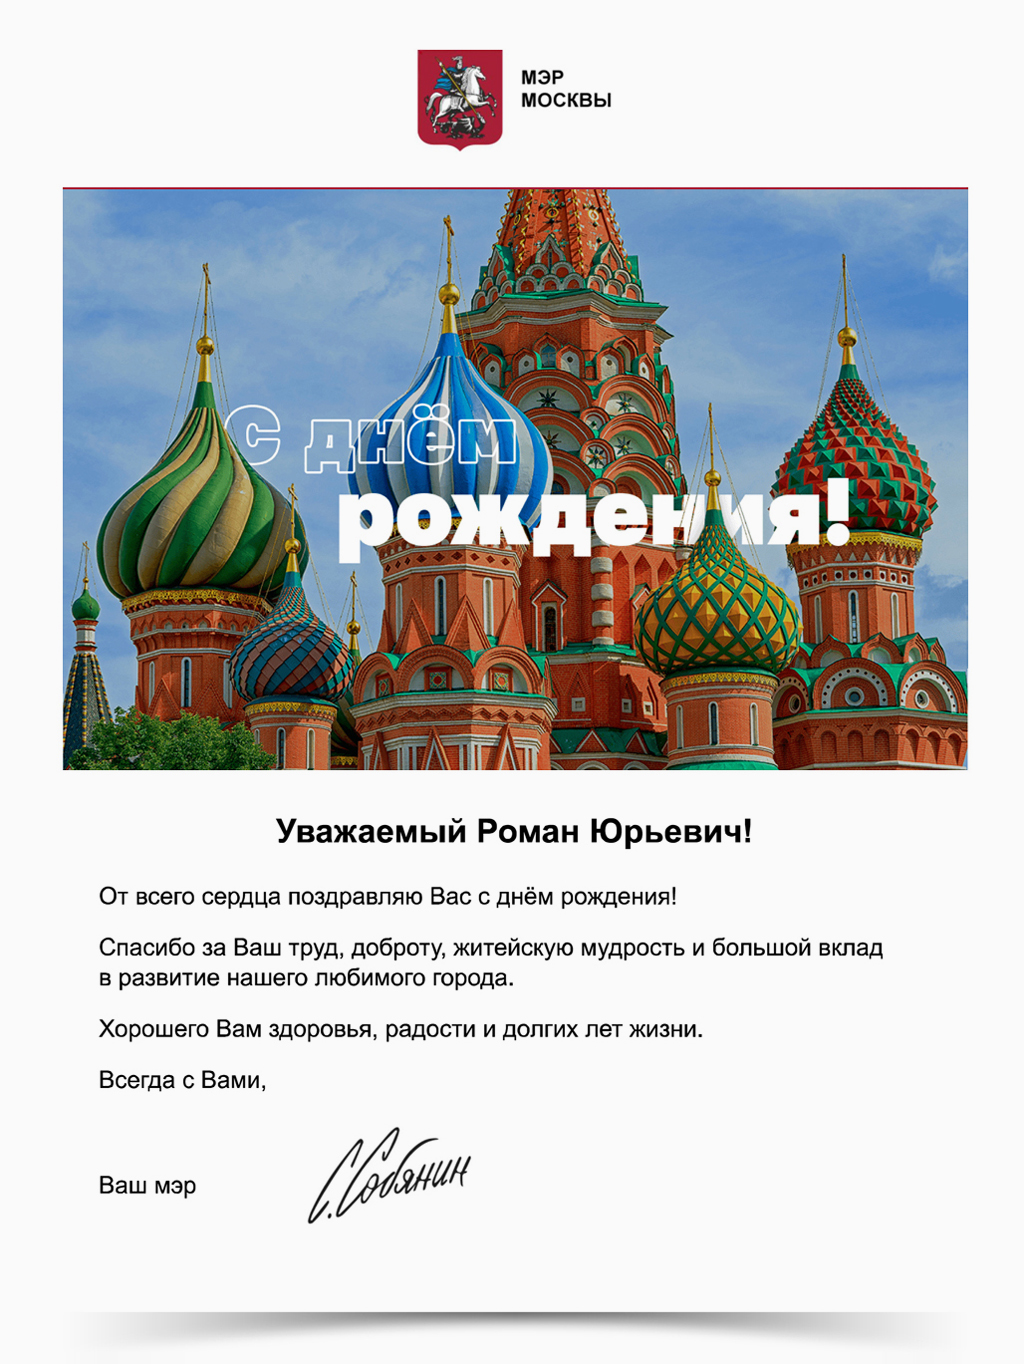 莫斯科市長的祝賀